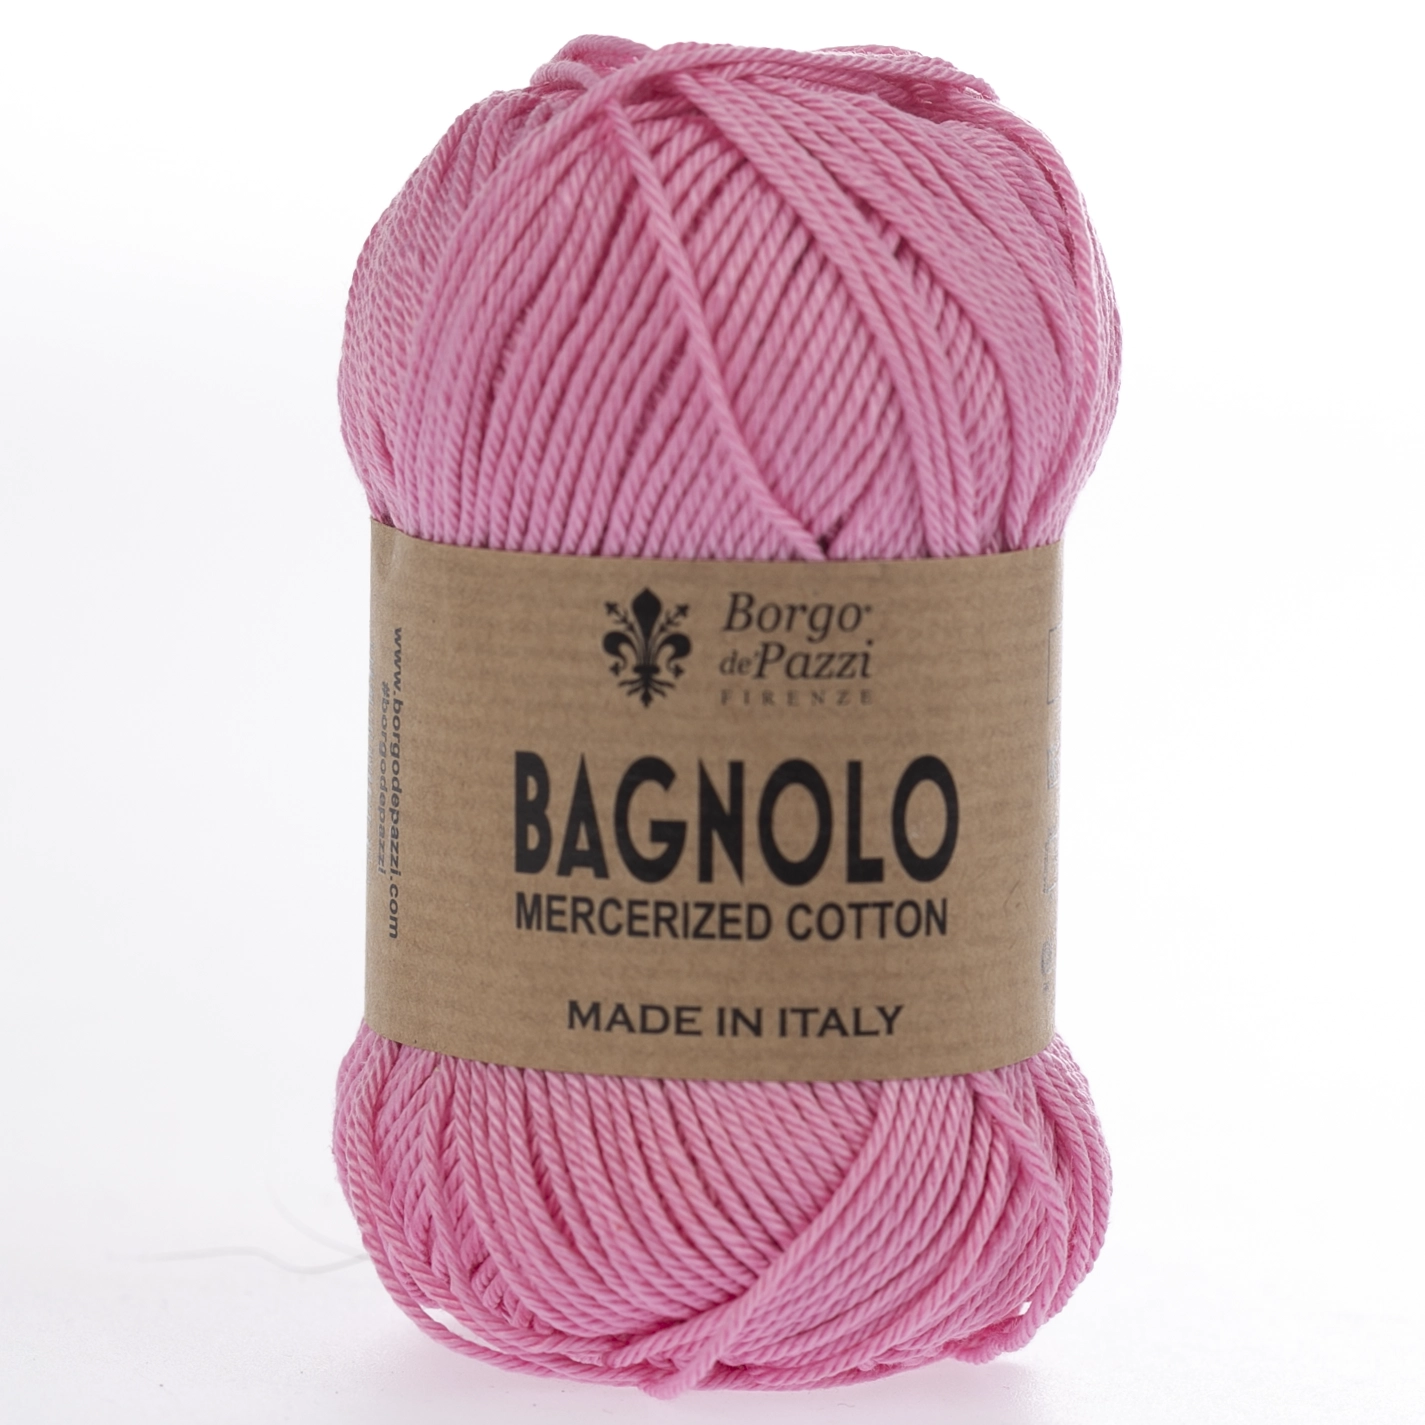 BAGNOLO Borgo de' Pazzi - 32 rosa